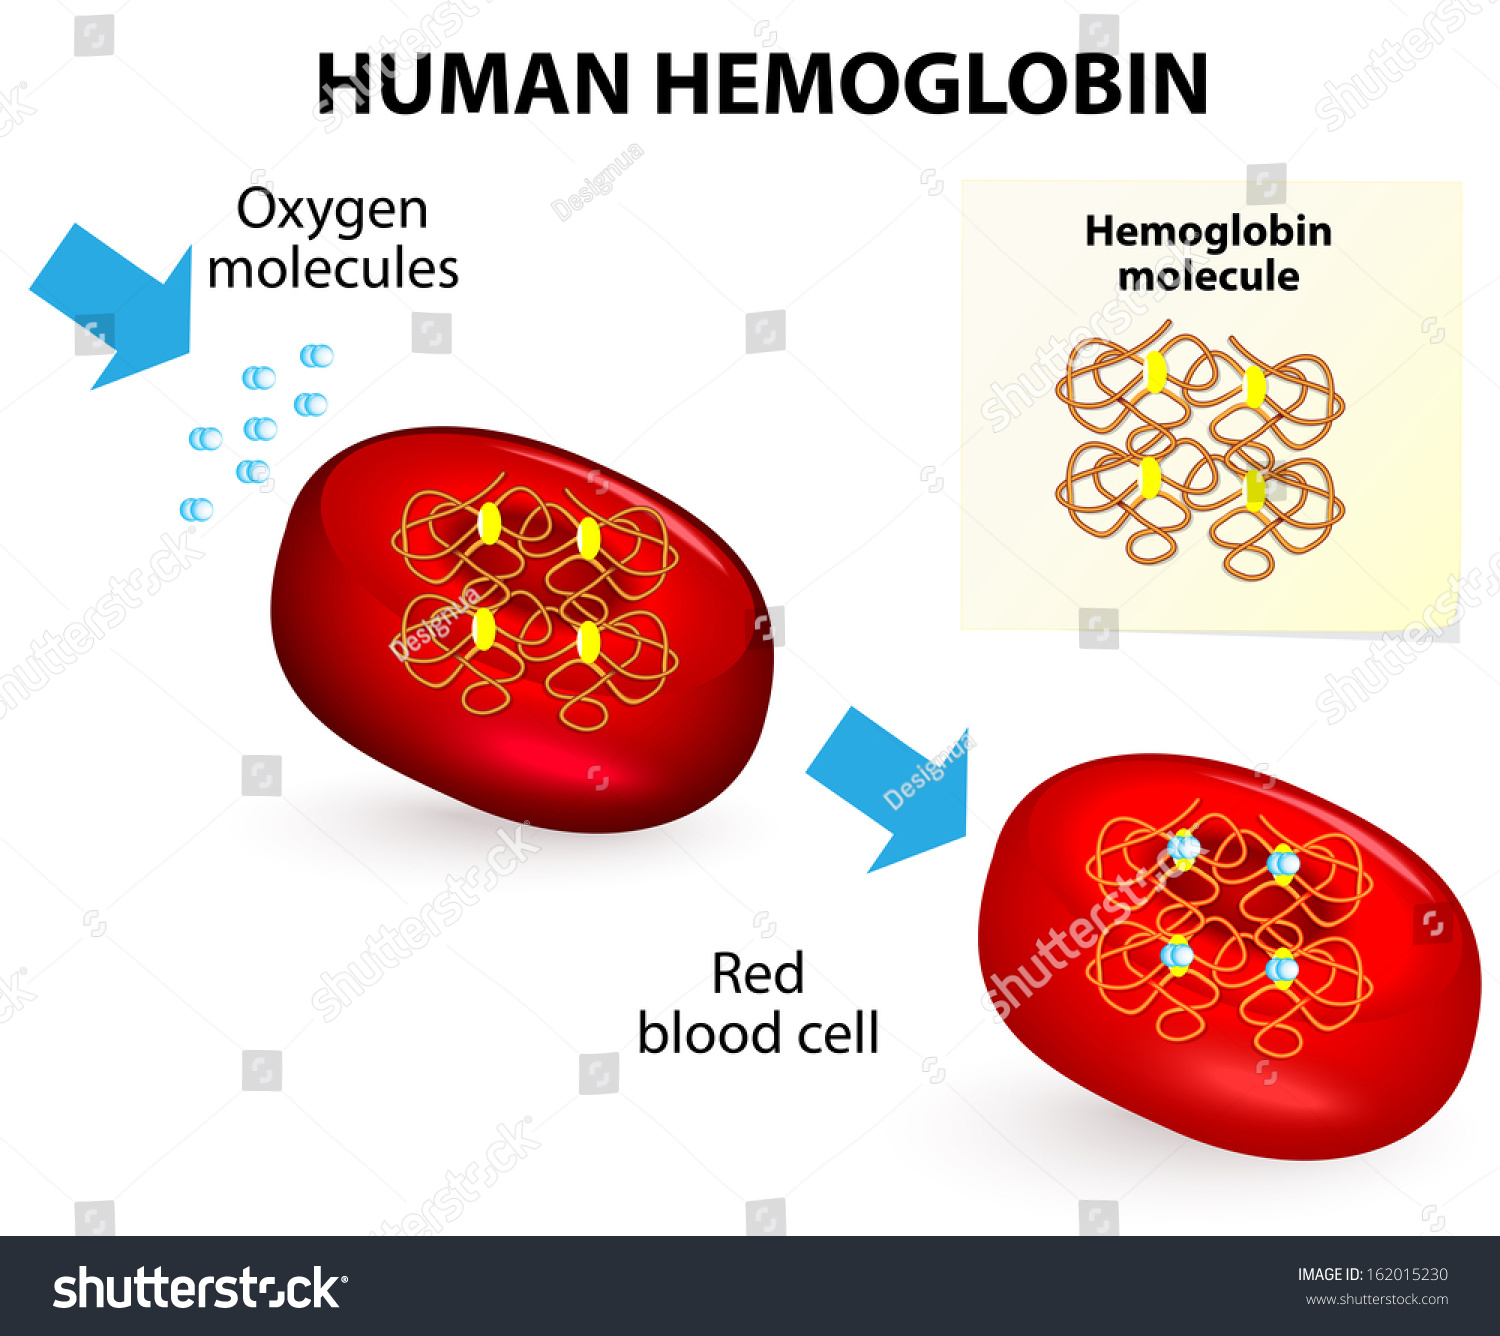 Image result for erythrocytes and hemoglobin